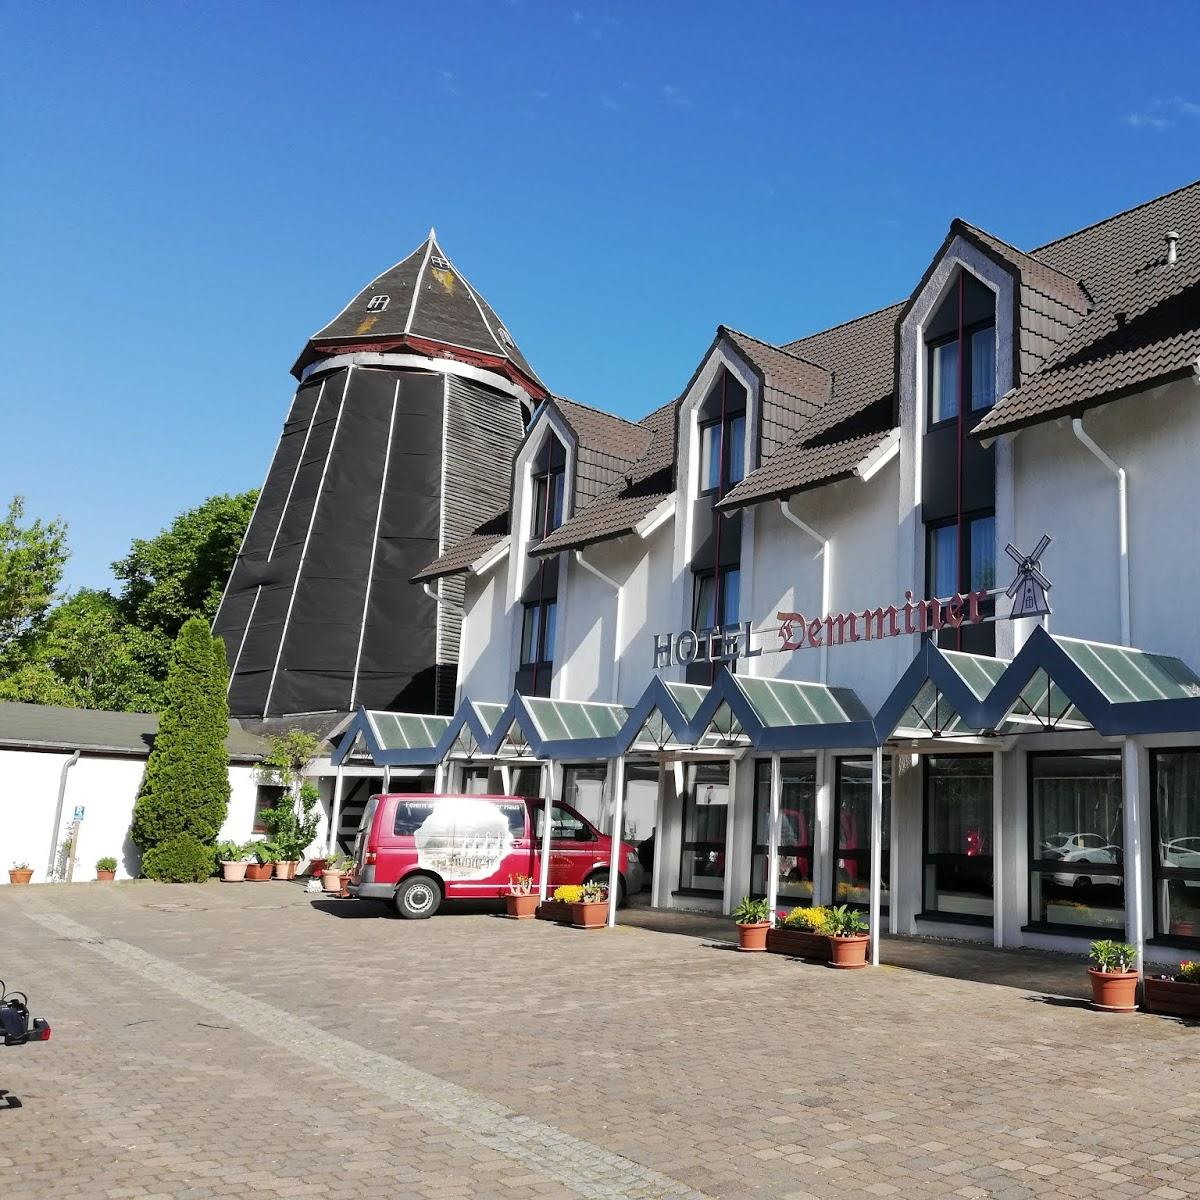 Restaurant "Hotel Demminer Mühle" in  Demmin